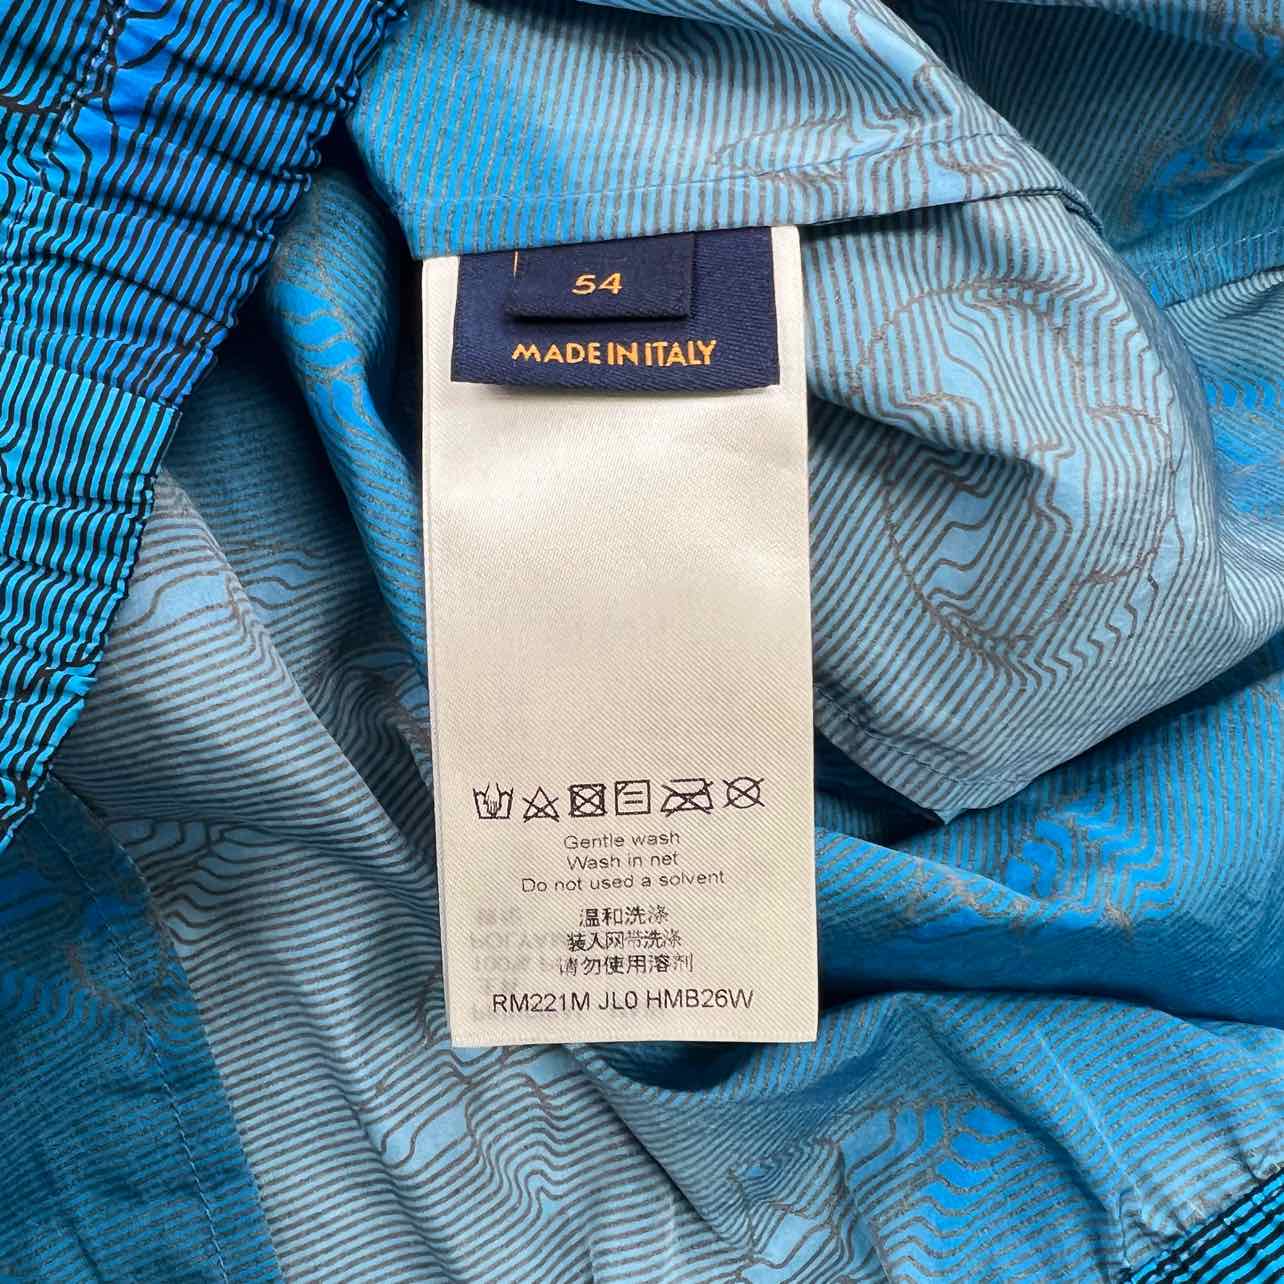 Louis Vuitton Track Jacket &quot;MONOGRAM&quot; Blue Used Size 54